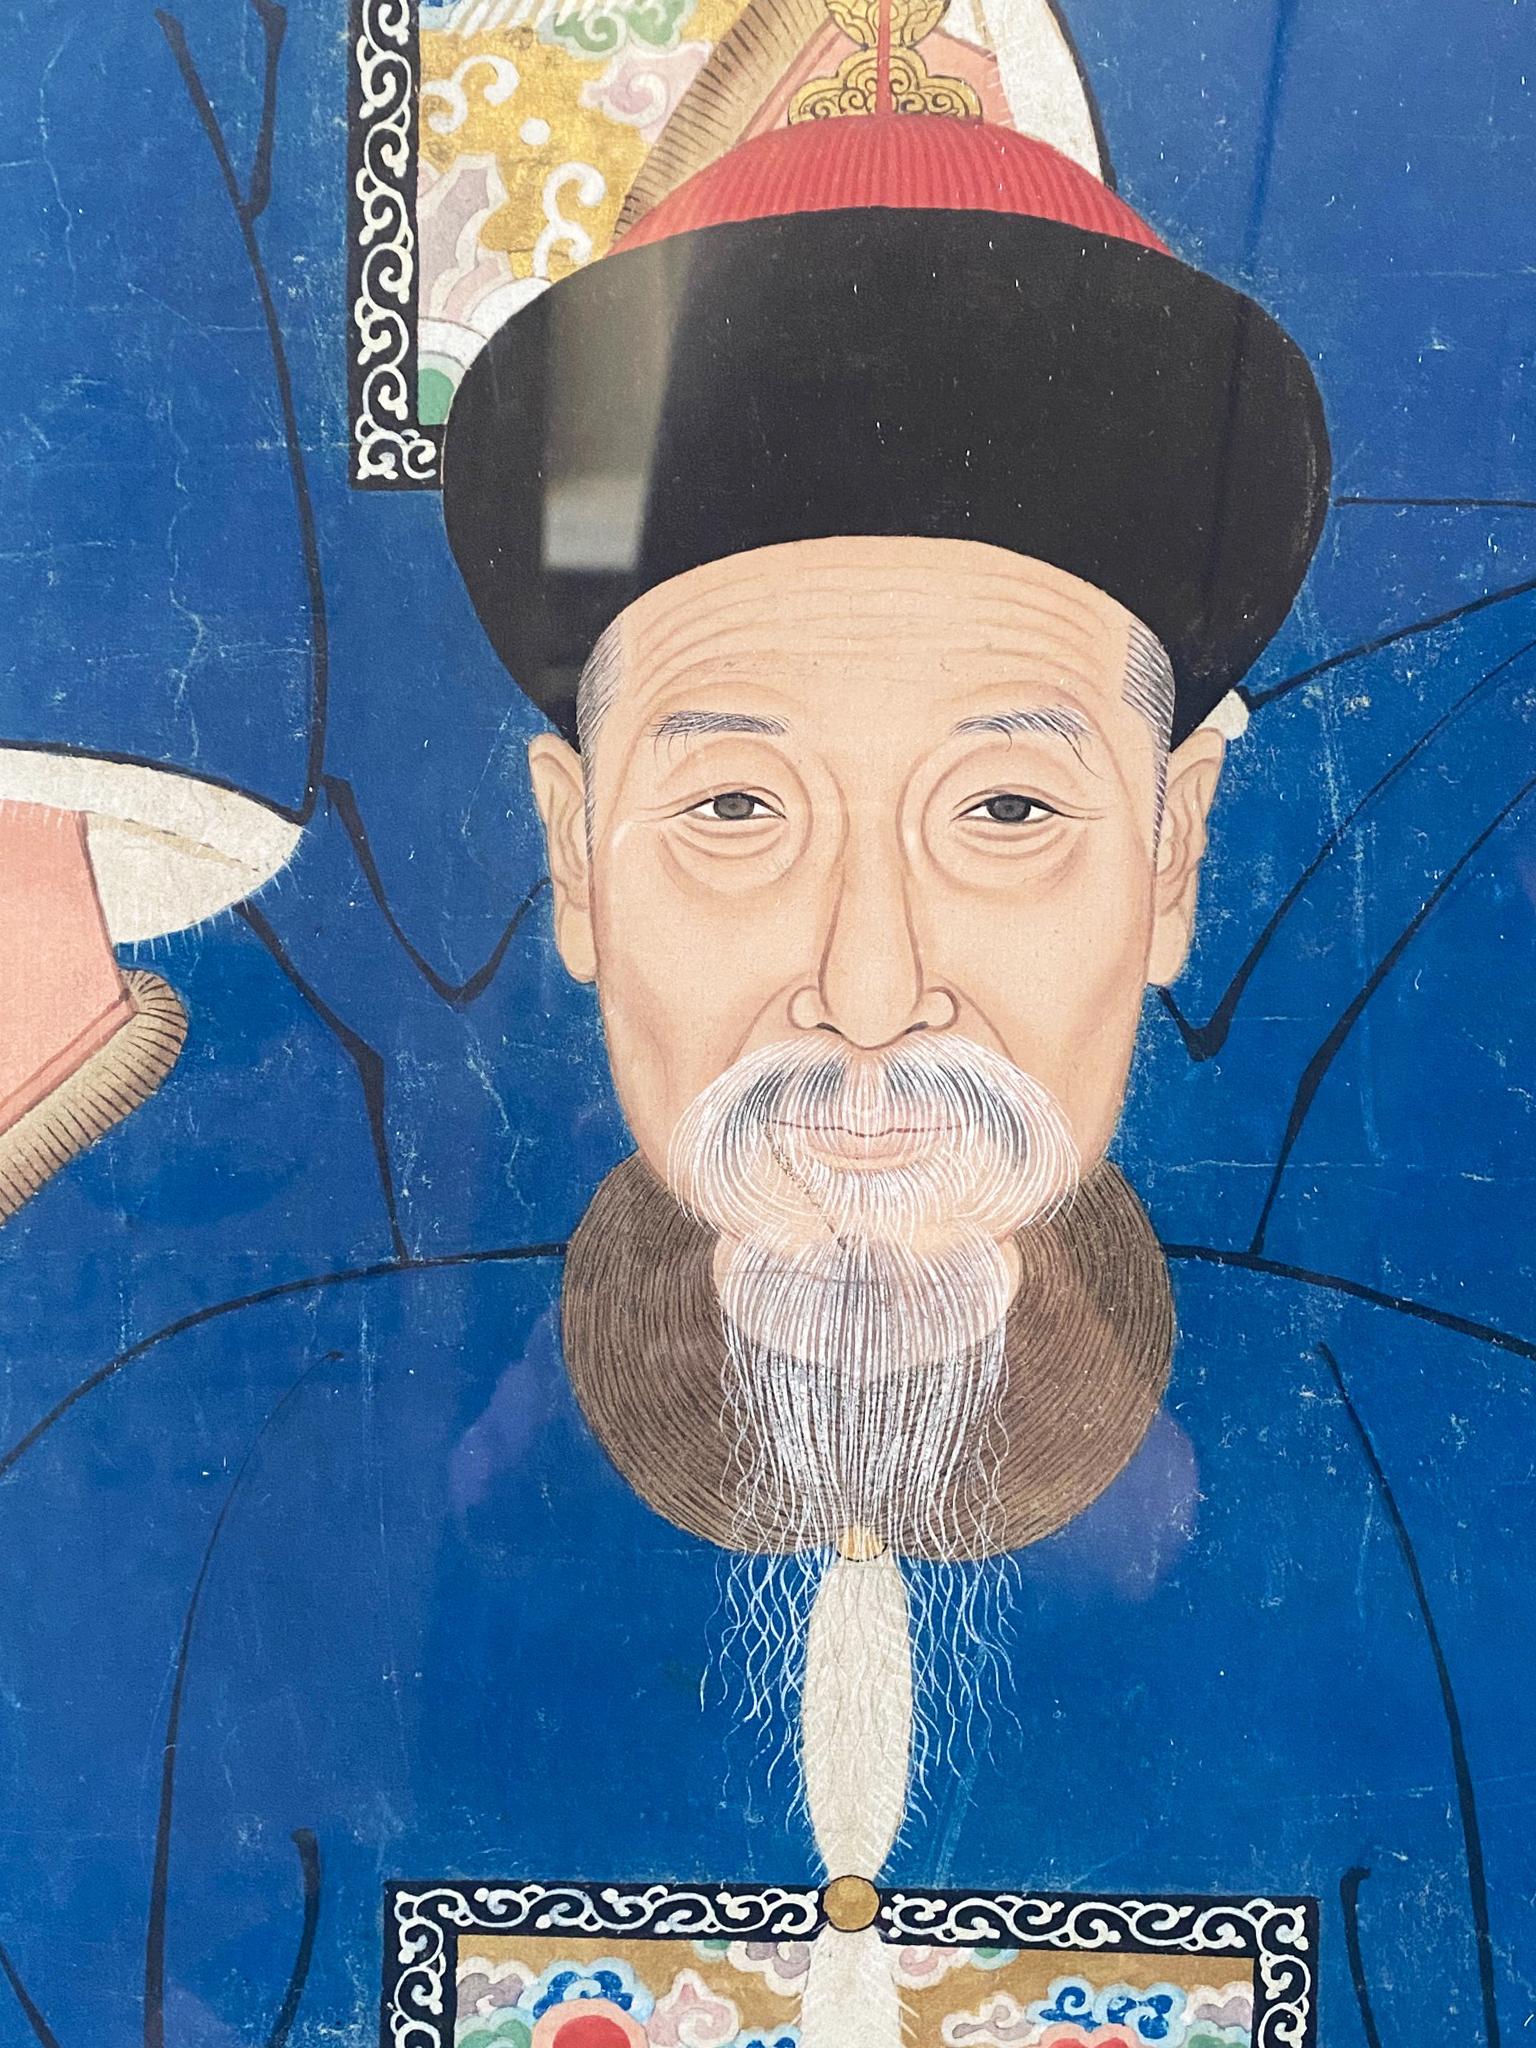 Glass Qing Dynasty Era Ancestral Portrait